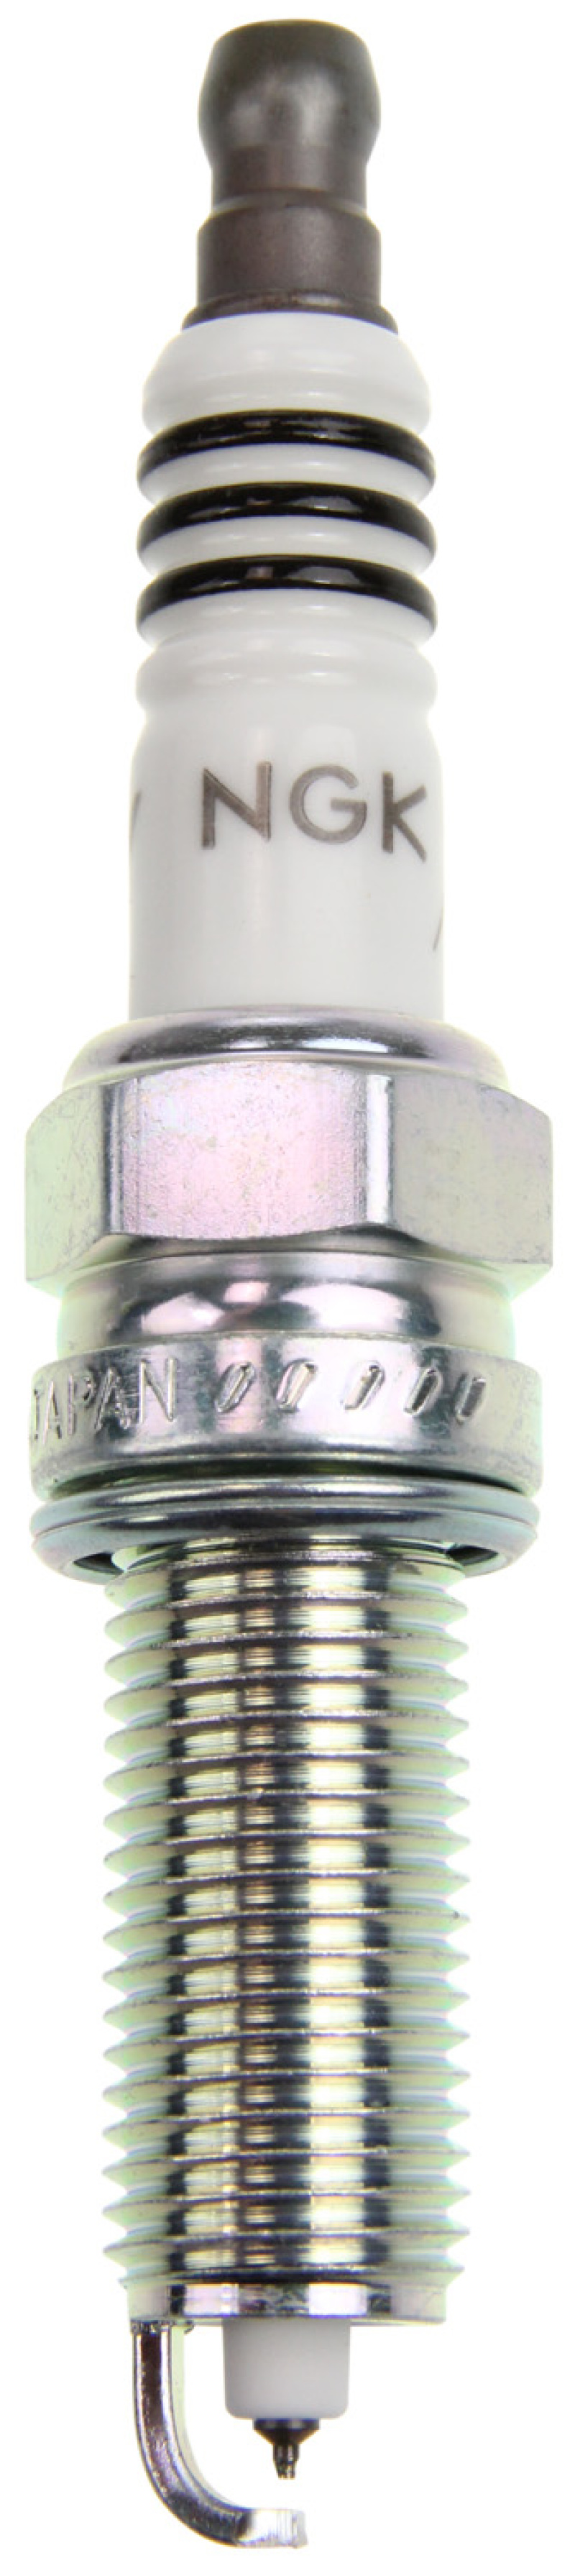 NGK Iridium IX Spark Plug Box of 4 (LZKR6AIX) - 92873